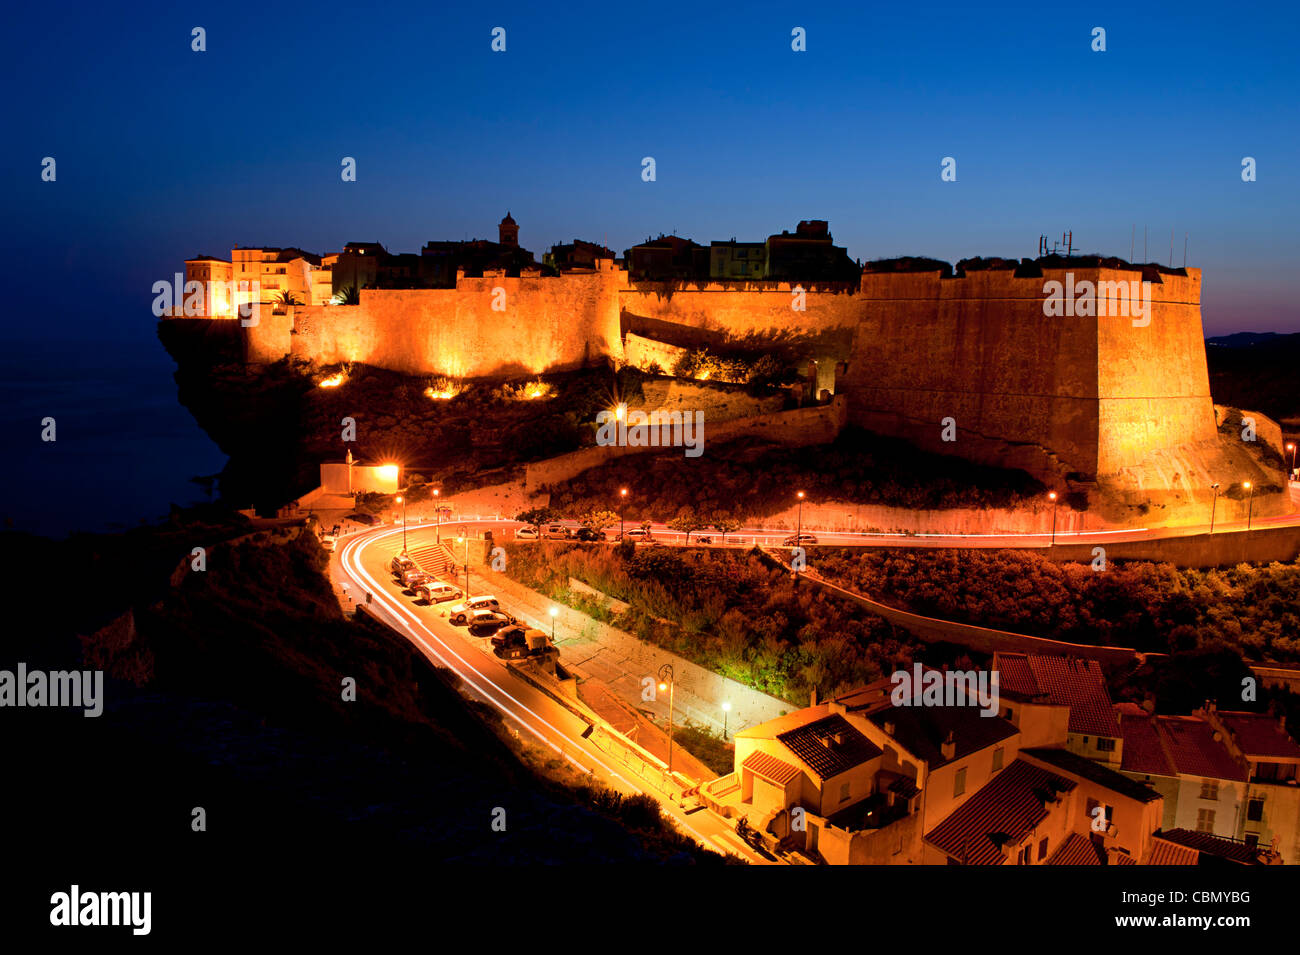 Citadelle sur la ville de Bonifacio, corse au crépuscule Banque D'Images